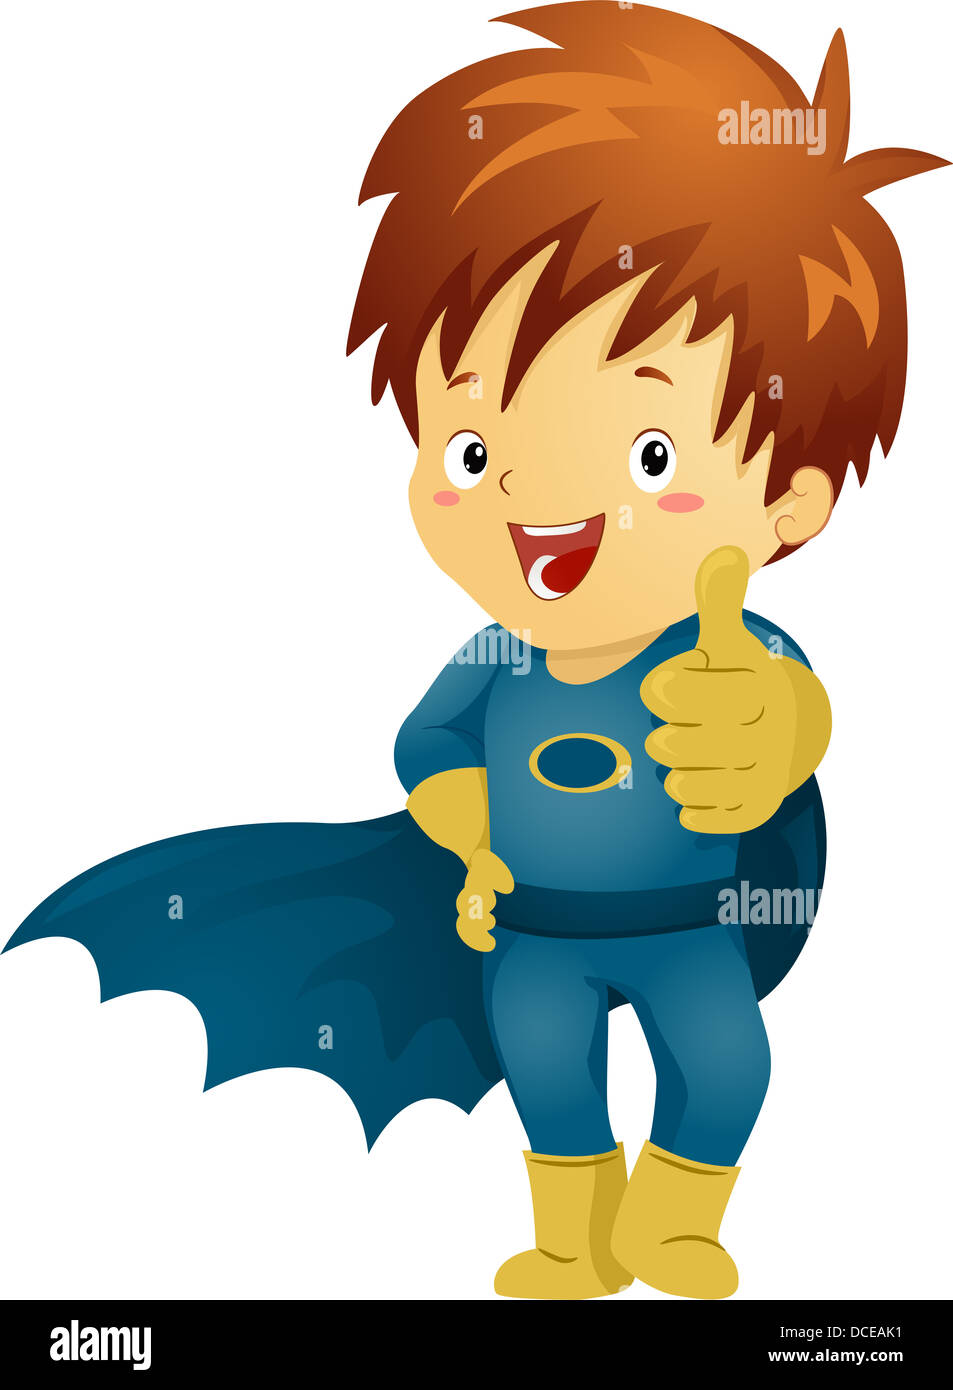 Ilustración de un chico joven superhéroe haciendo un signo OK Foto de stock